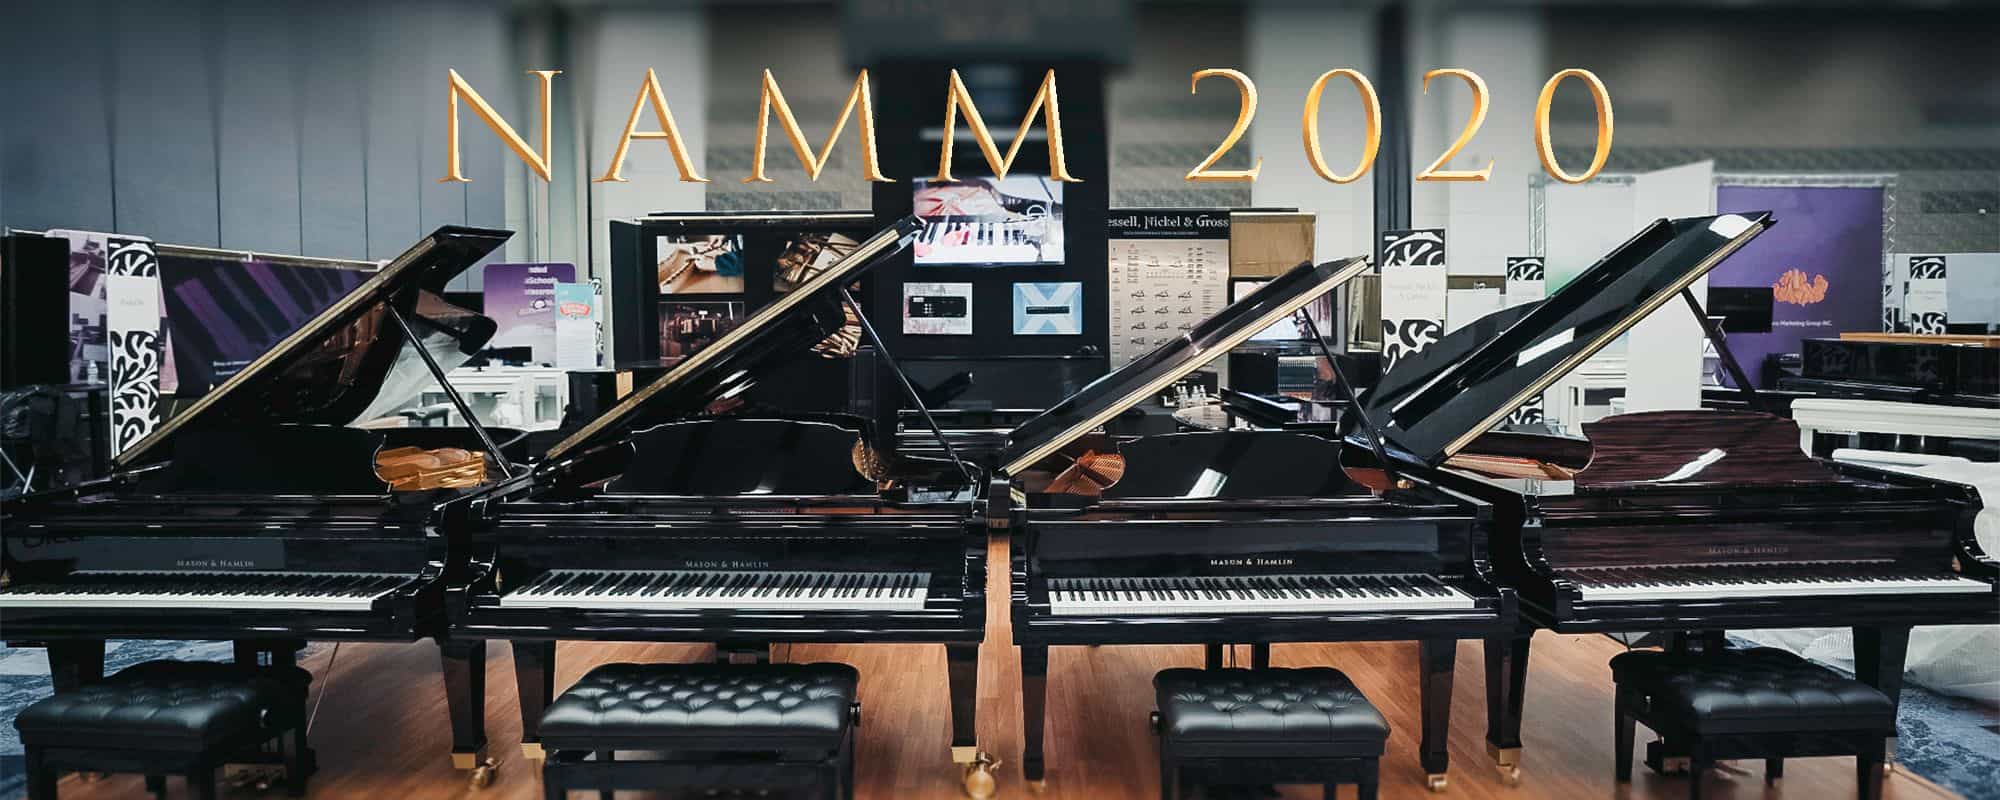 NAMM 2020 Cover • Mason & Hamlin Piano Company • Made in the USA